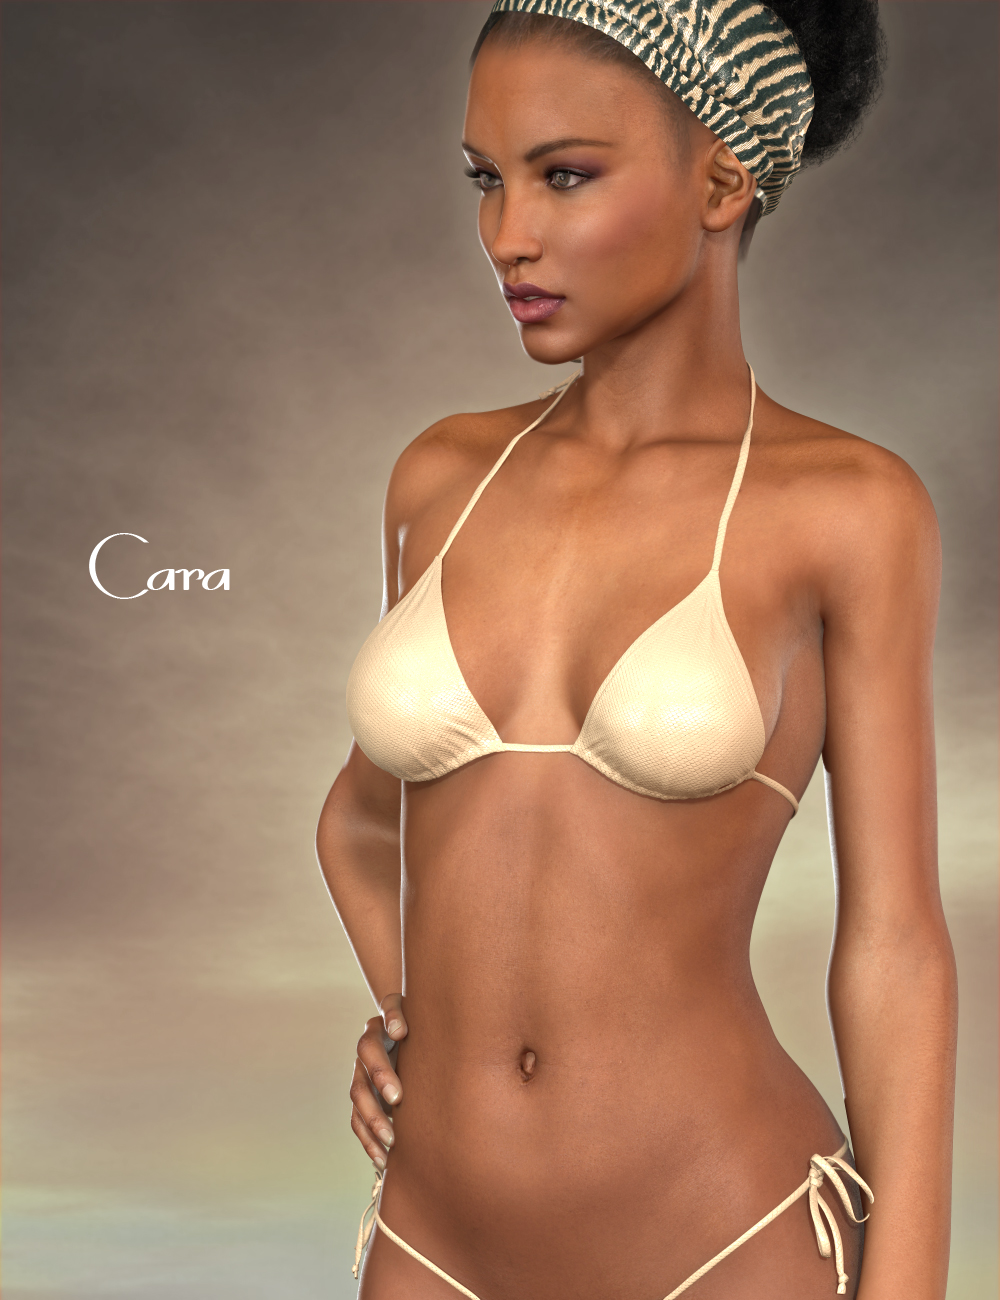 Cara HD for Victoria 6 by: Raiya, 3D Models by Daz 3D